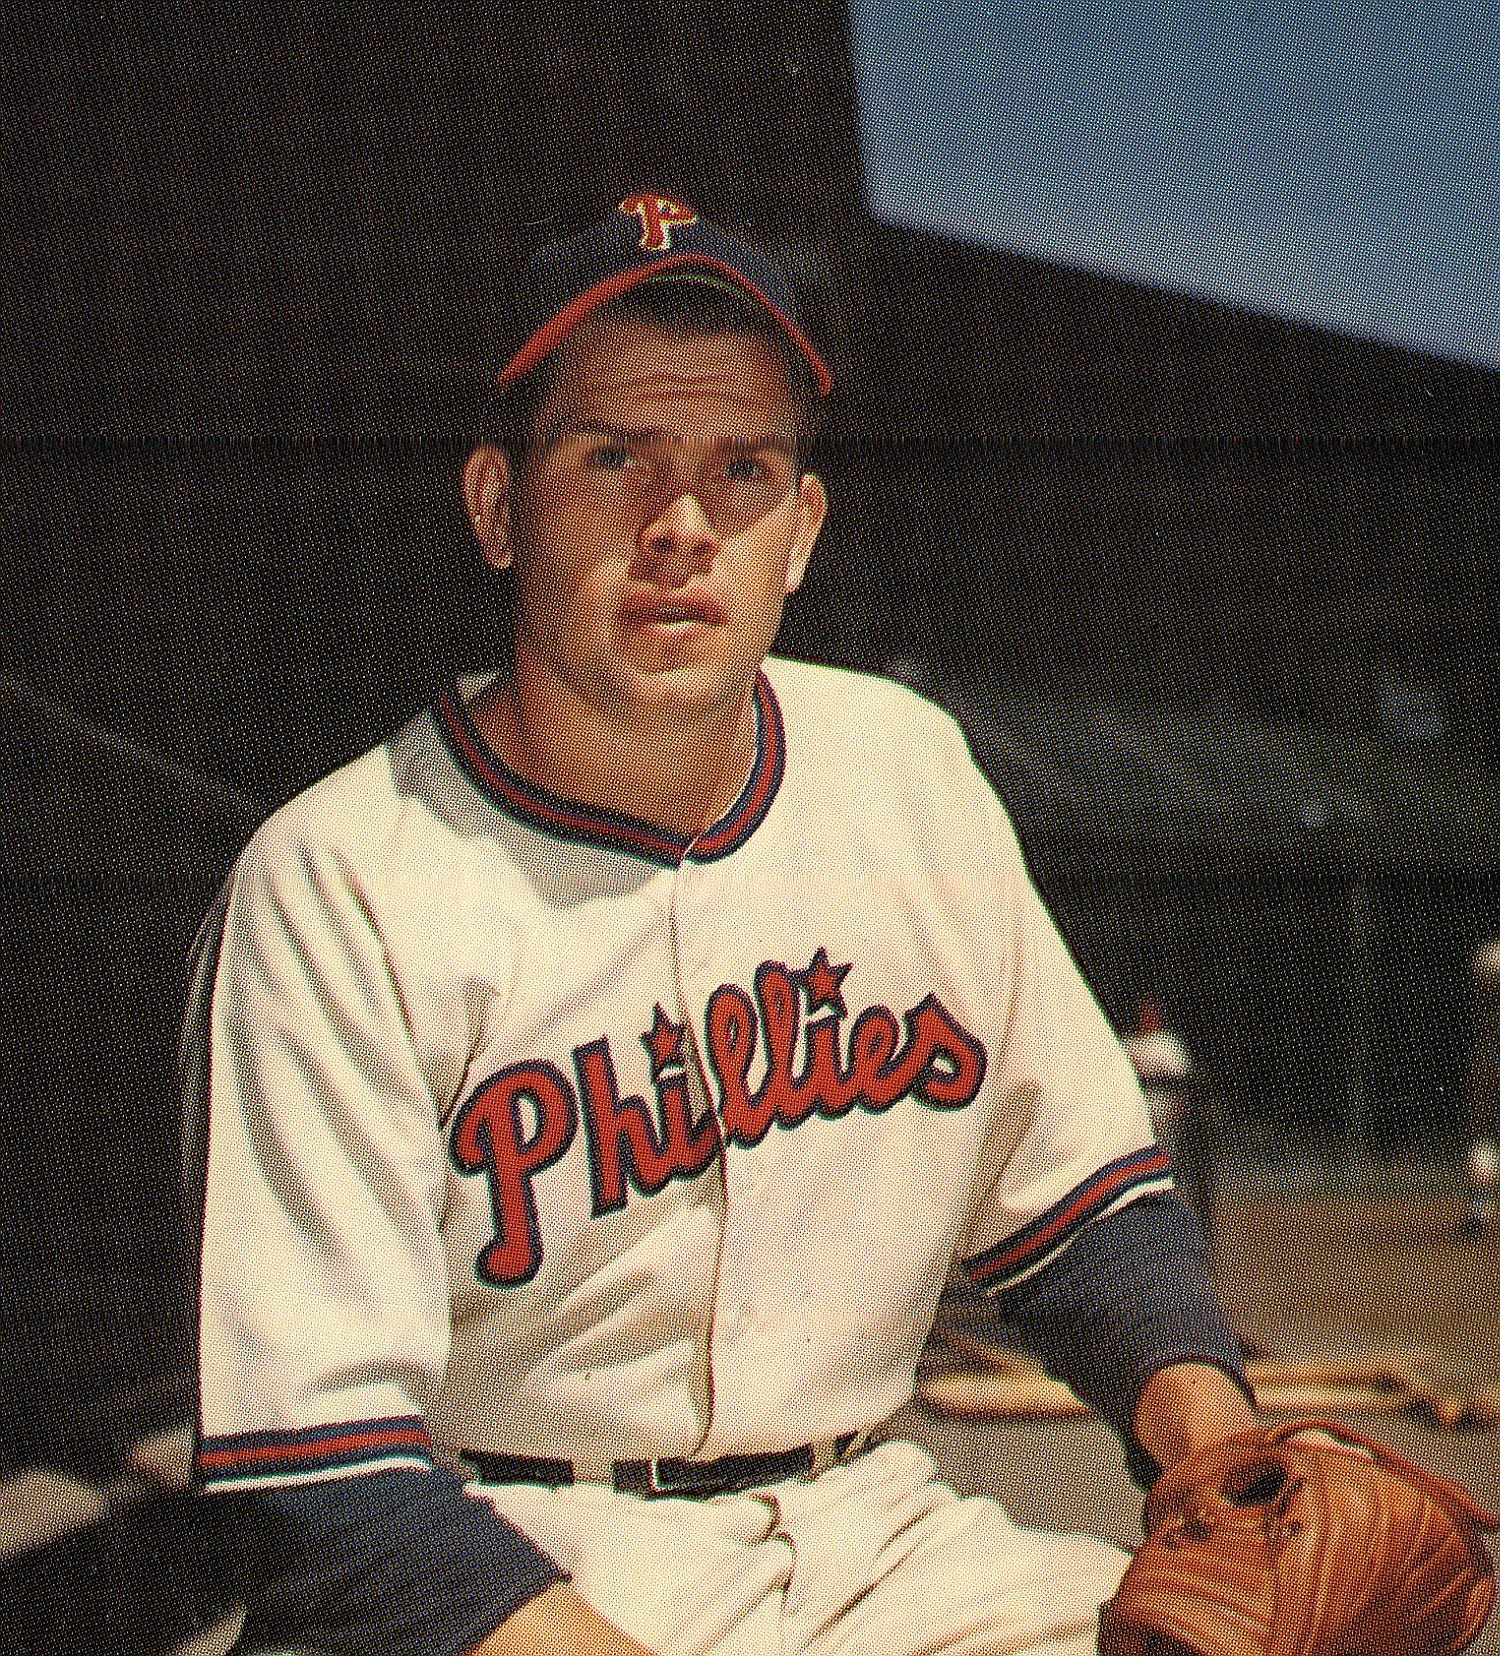 Robin Roberts' baseball career began in 